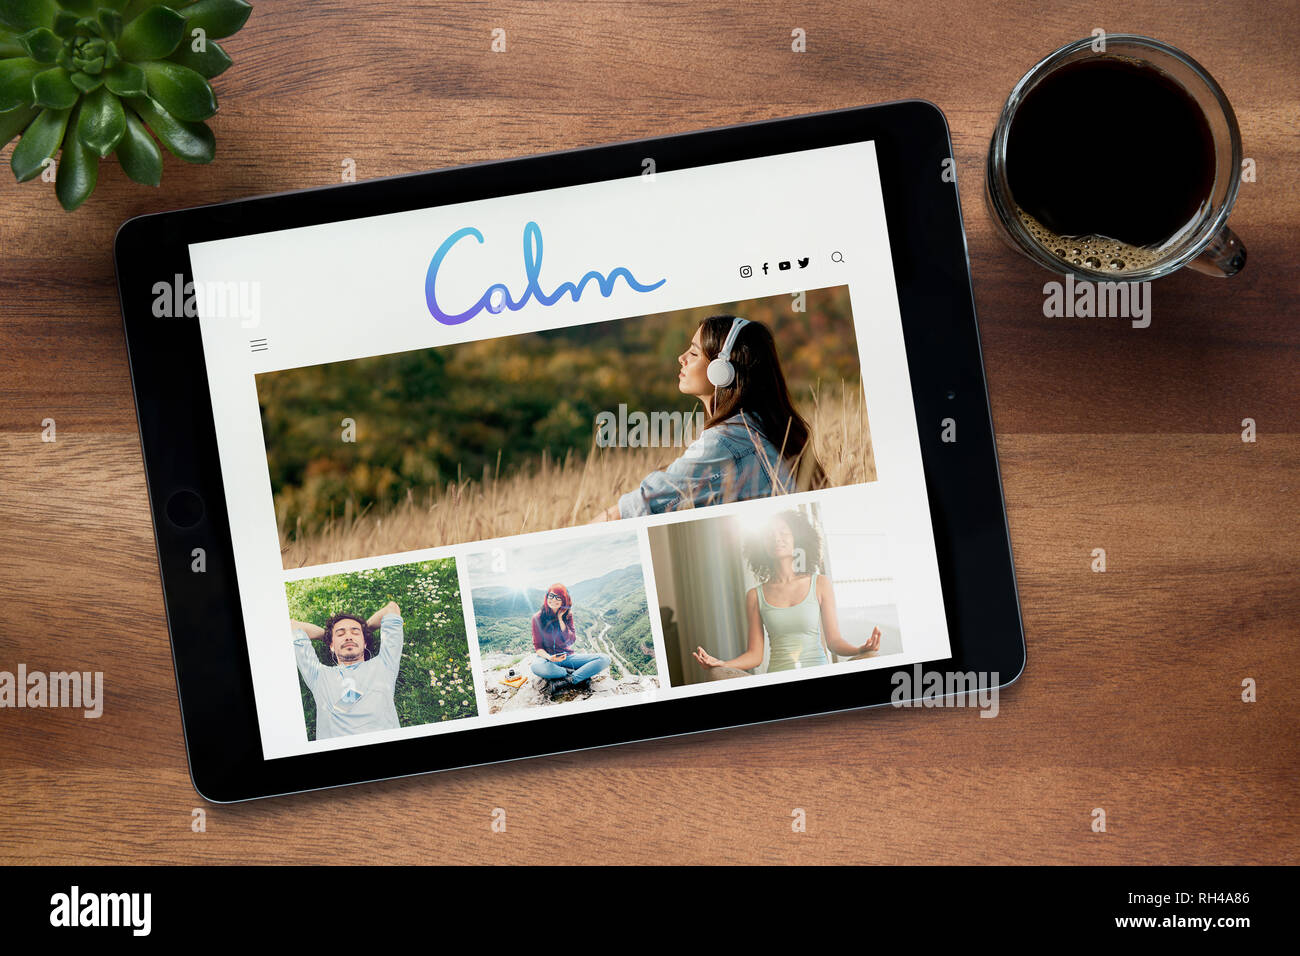 Le site web de calme est vu sur un iPad tablet, sur une table en bois avec une machine à expresso et d'une plante (usage éditorial uniquement). Banque D'Images